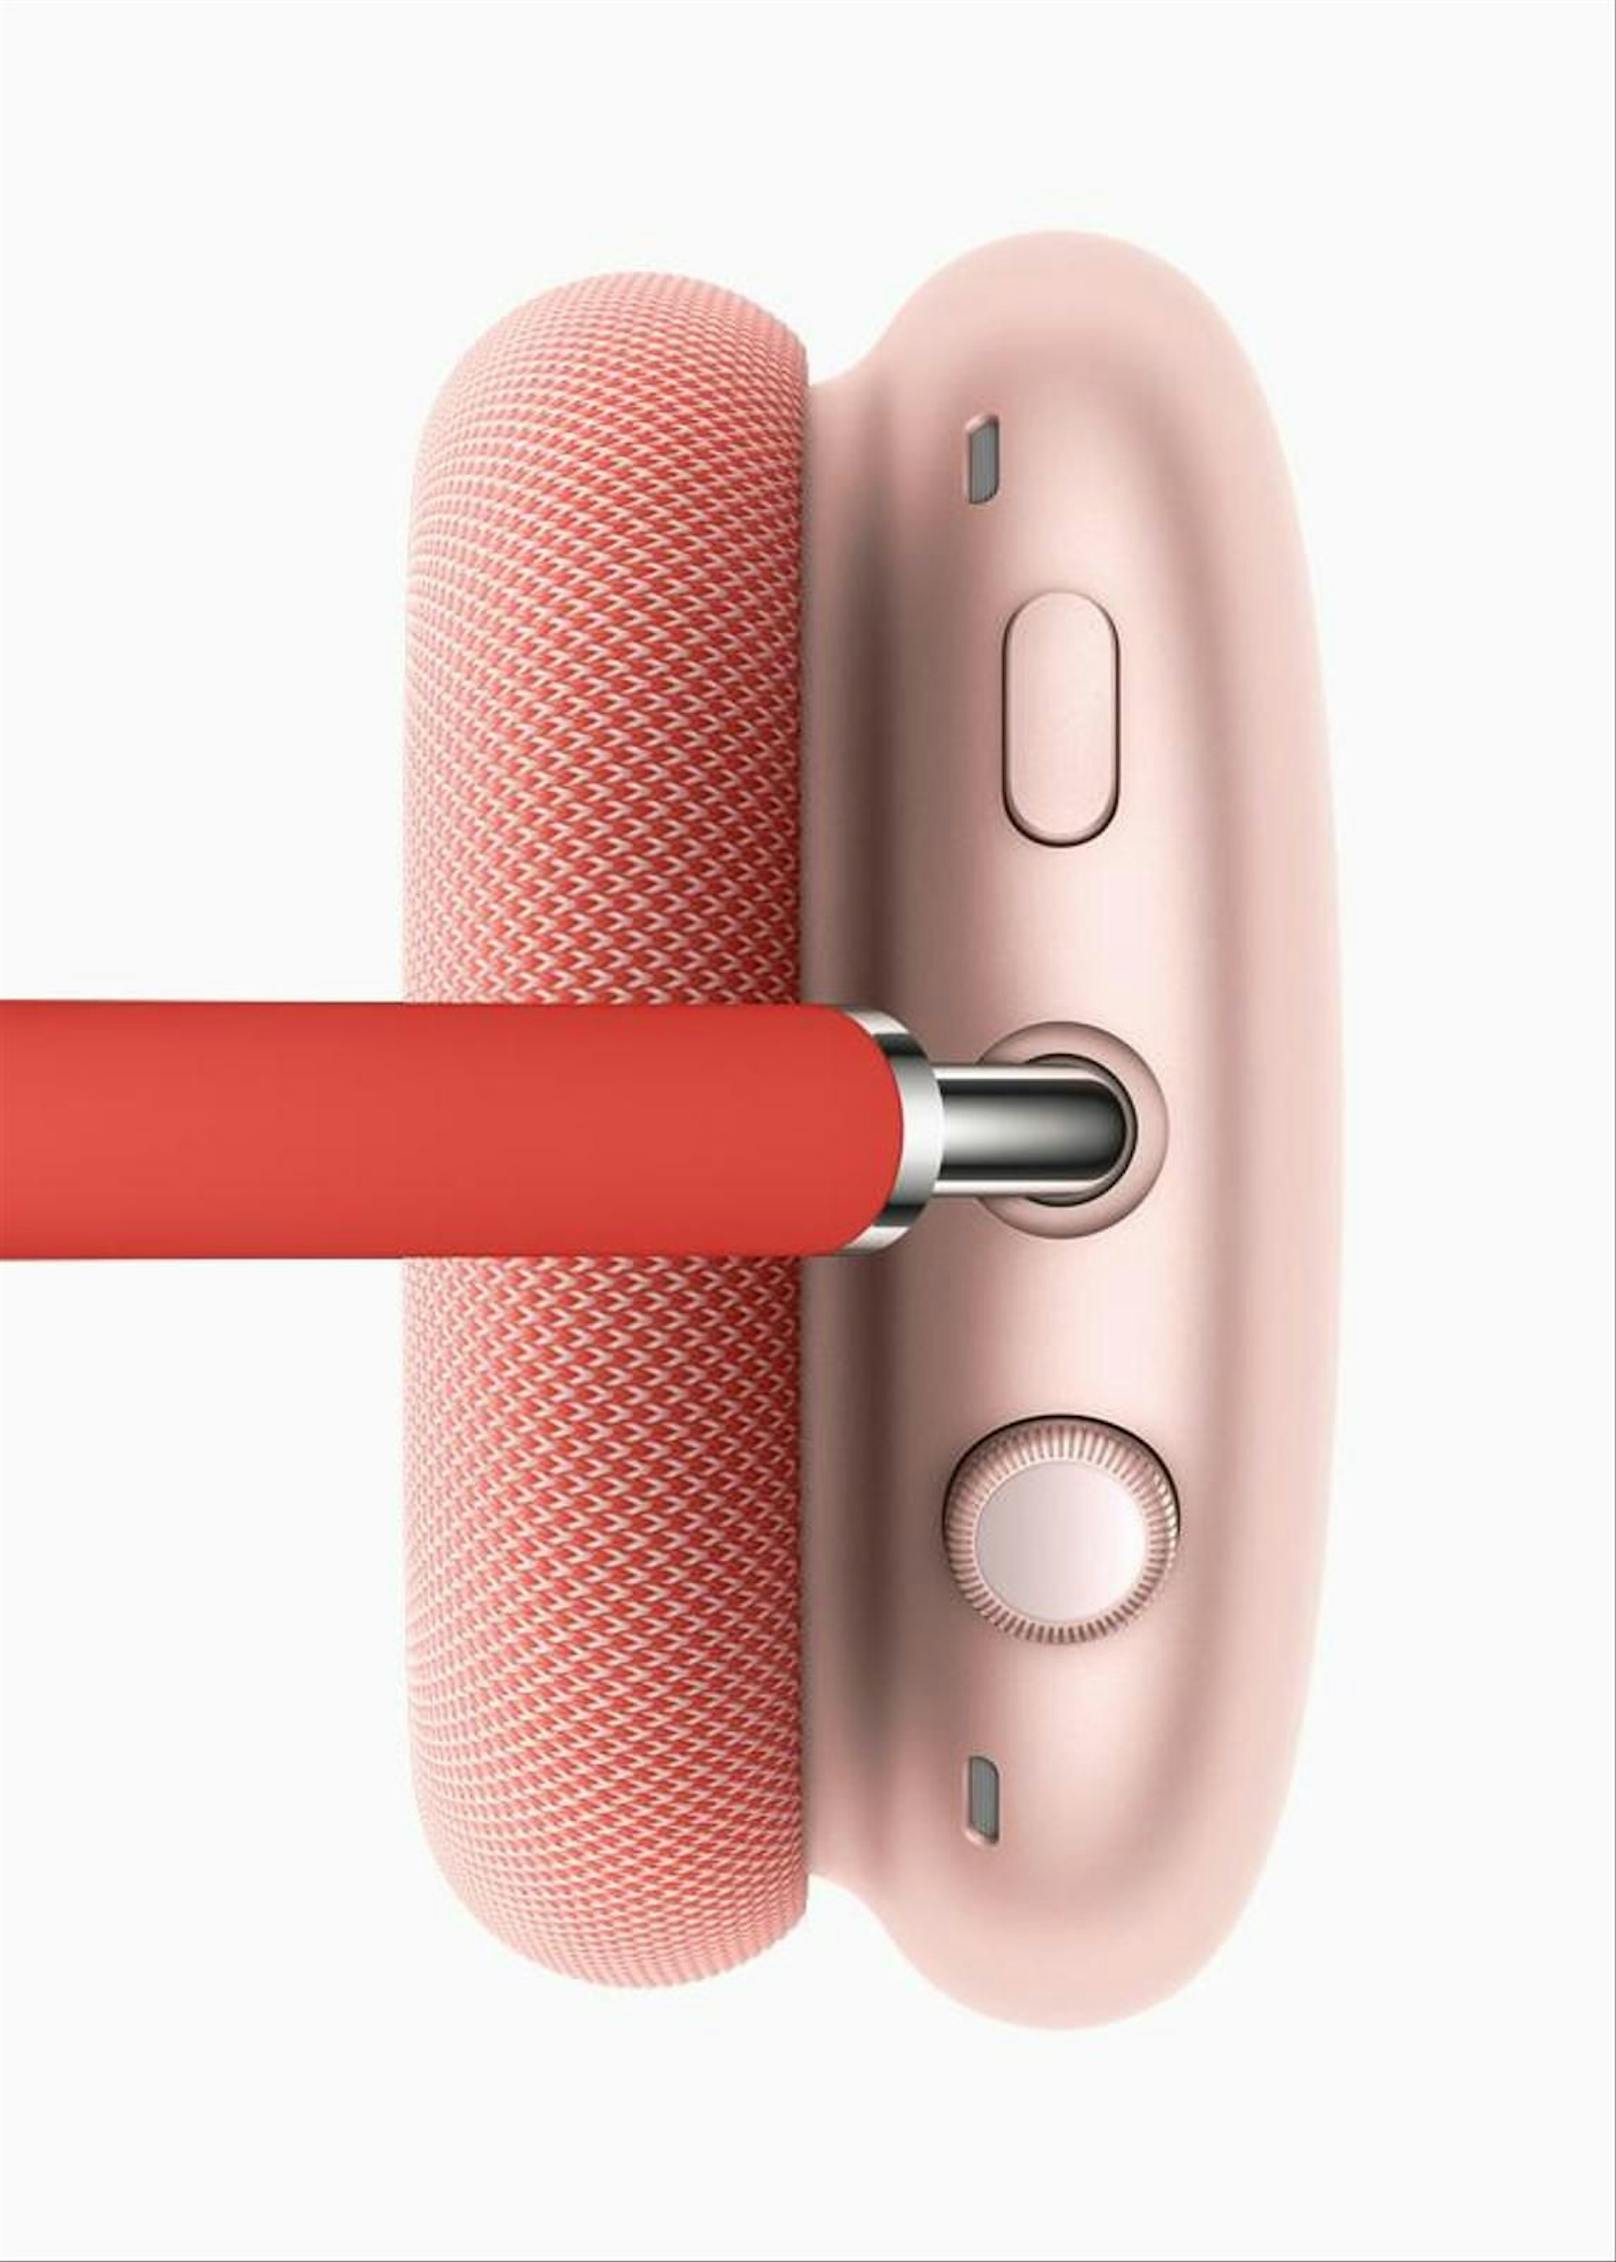 Neben Standardfunktionen wie Geräuschunterdrückung setzt Apple auf seine Erfahrung bei der digitalen Sound-Bearbeitung in bisherigen AirPods und HomePod-Lautsprechern sowie ein nahtloses Zusammenspiel mit anderer Technik des Konzerns.